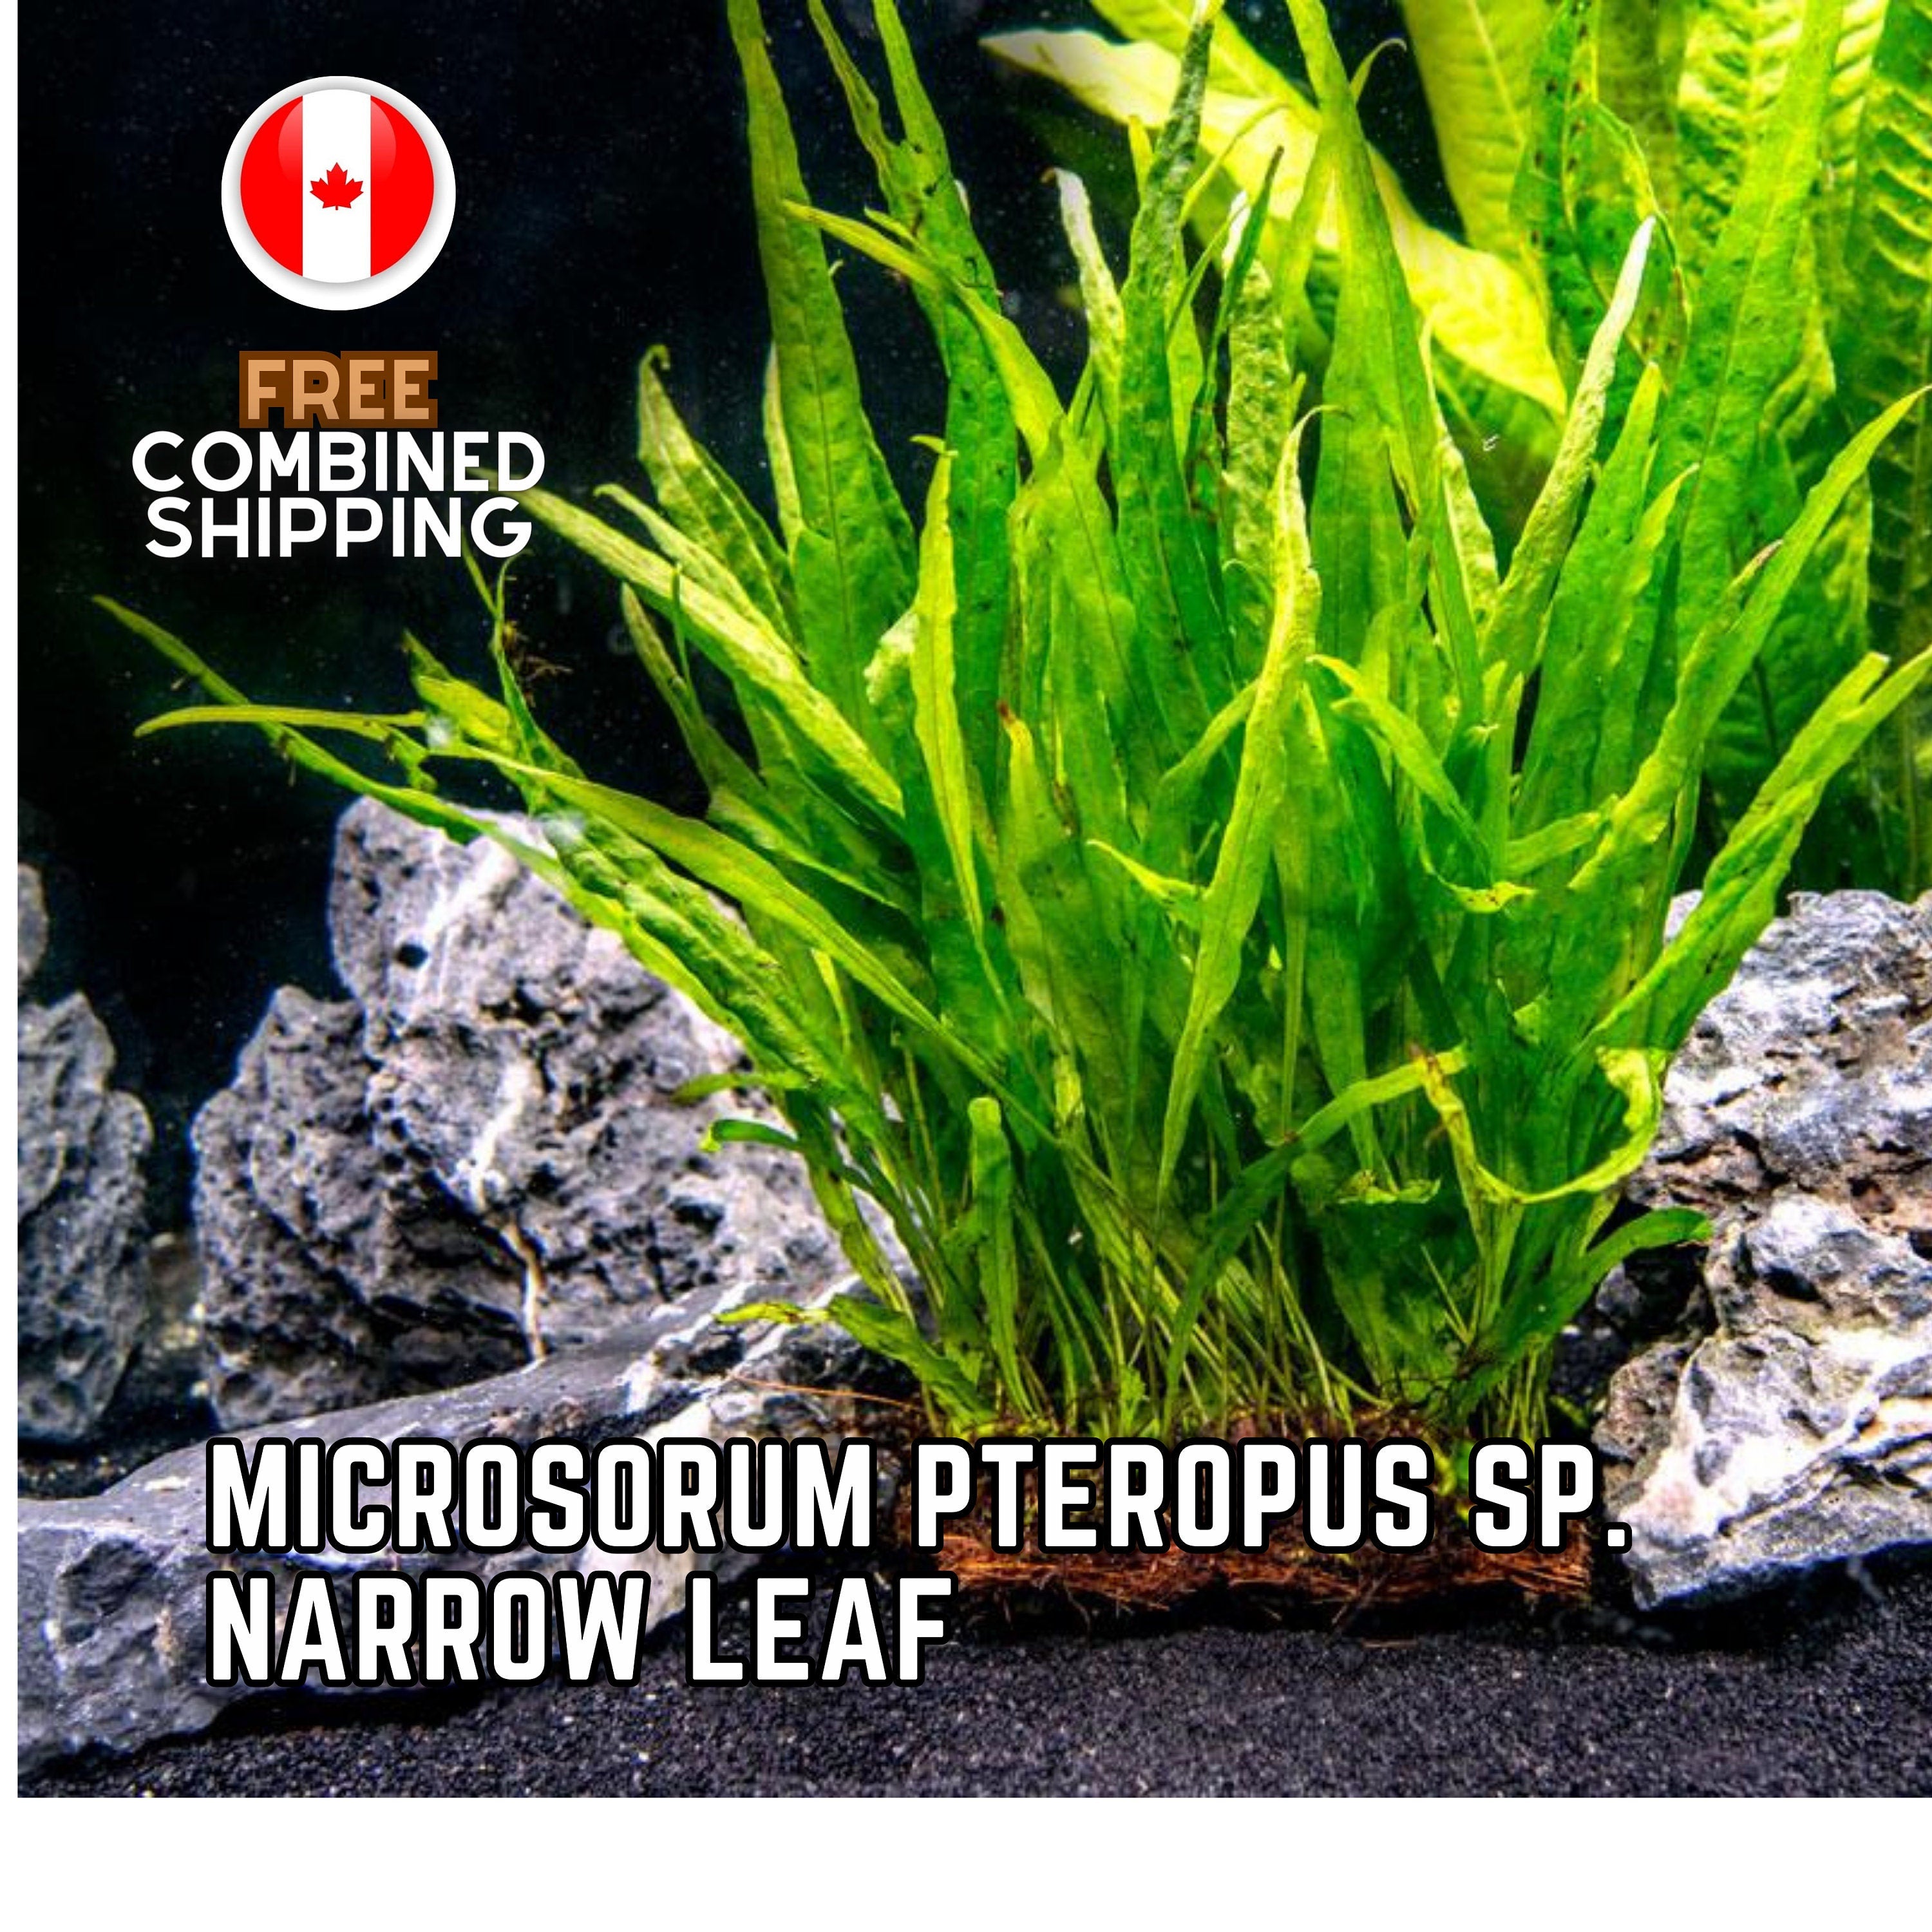 Microsorum Pteropus sp Narrow Leaf - Aquarium Plants - Aquatic Plants - Canada Seller - Combined Shipping